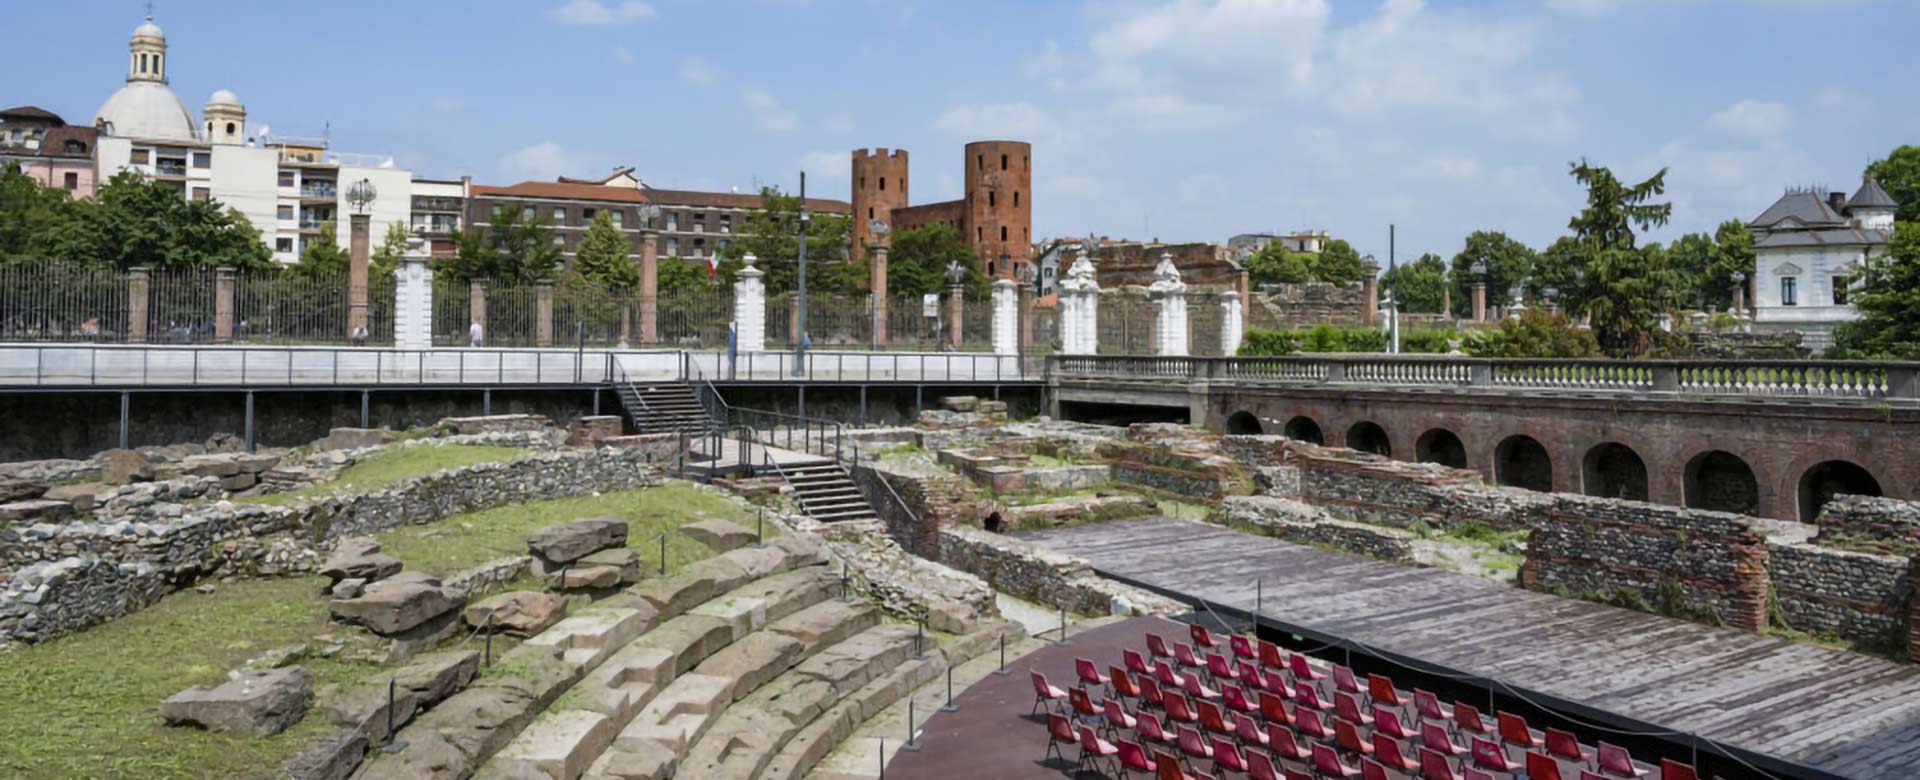 Il Teatro romano dei Musei reali di Torino